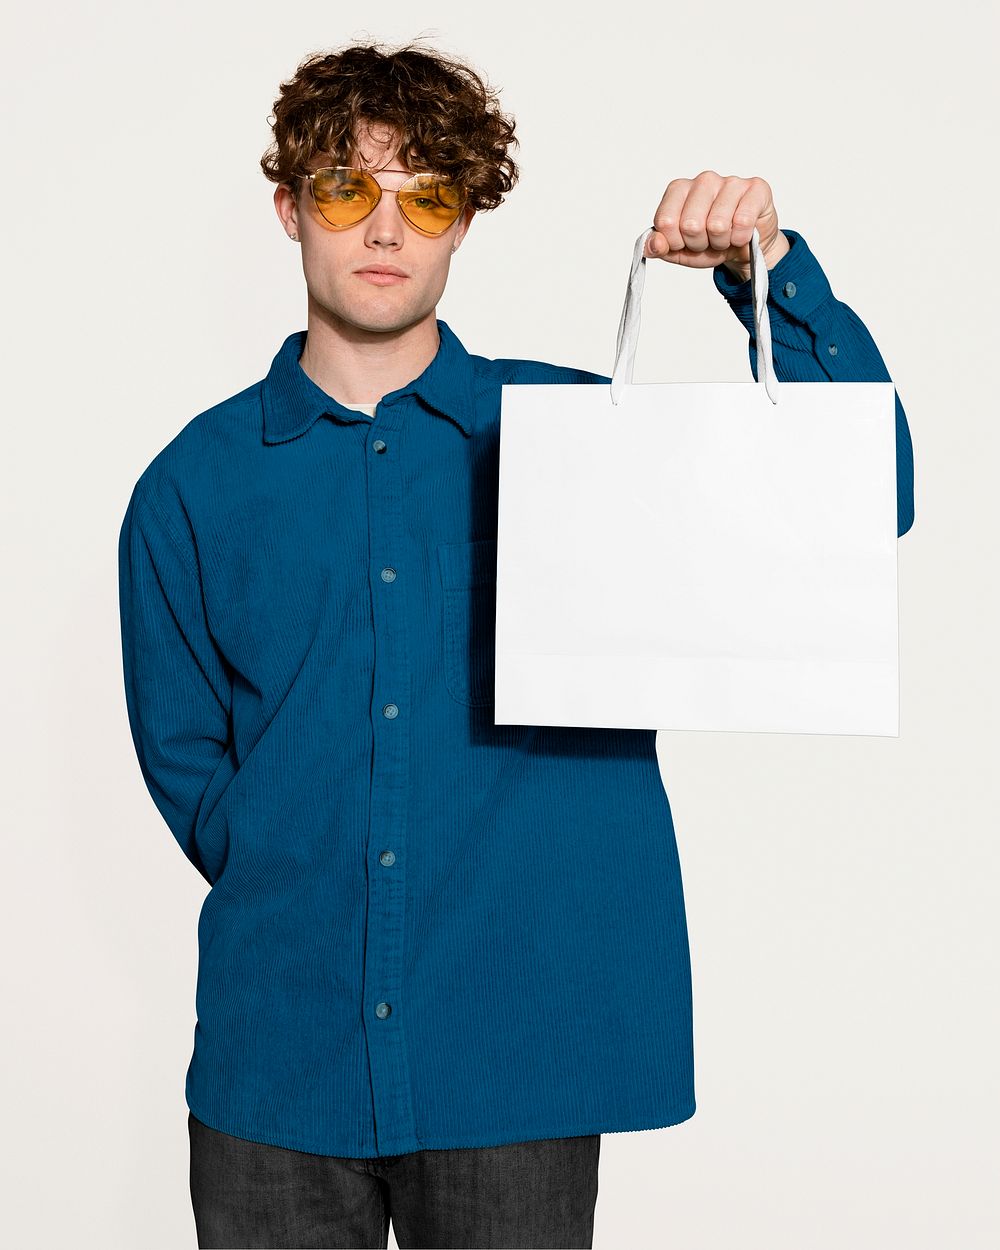 Unhappy man holding shopping bag